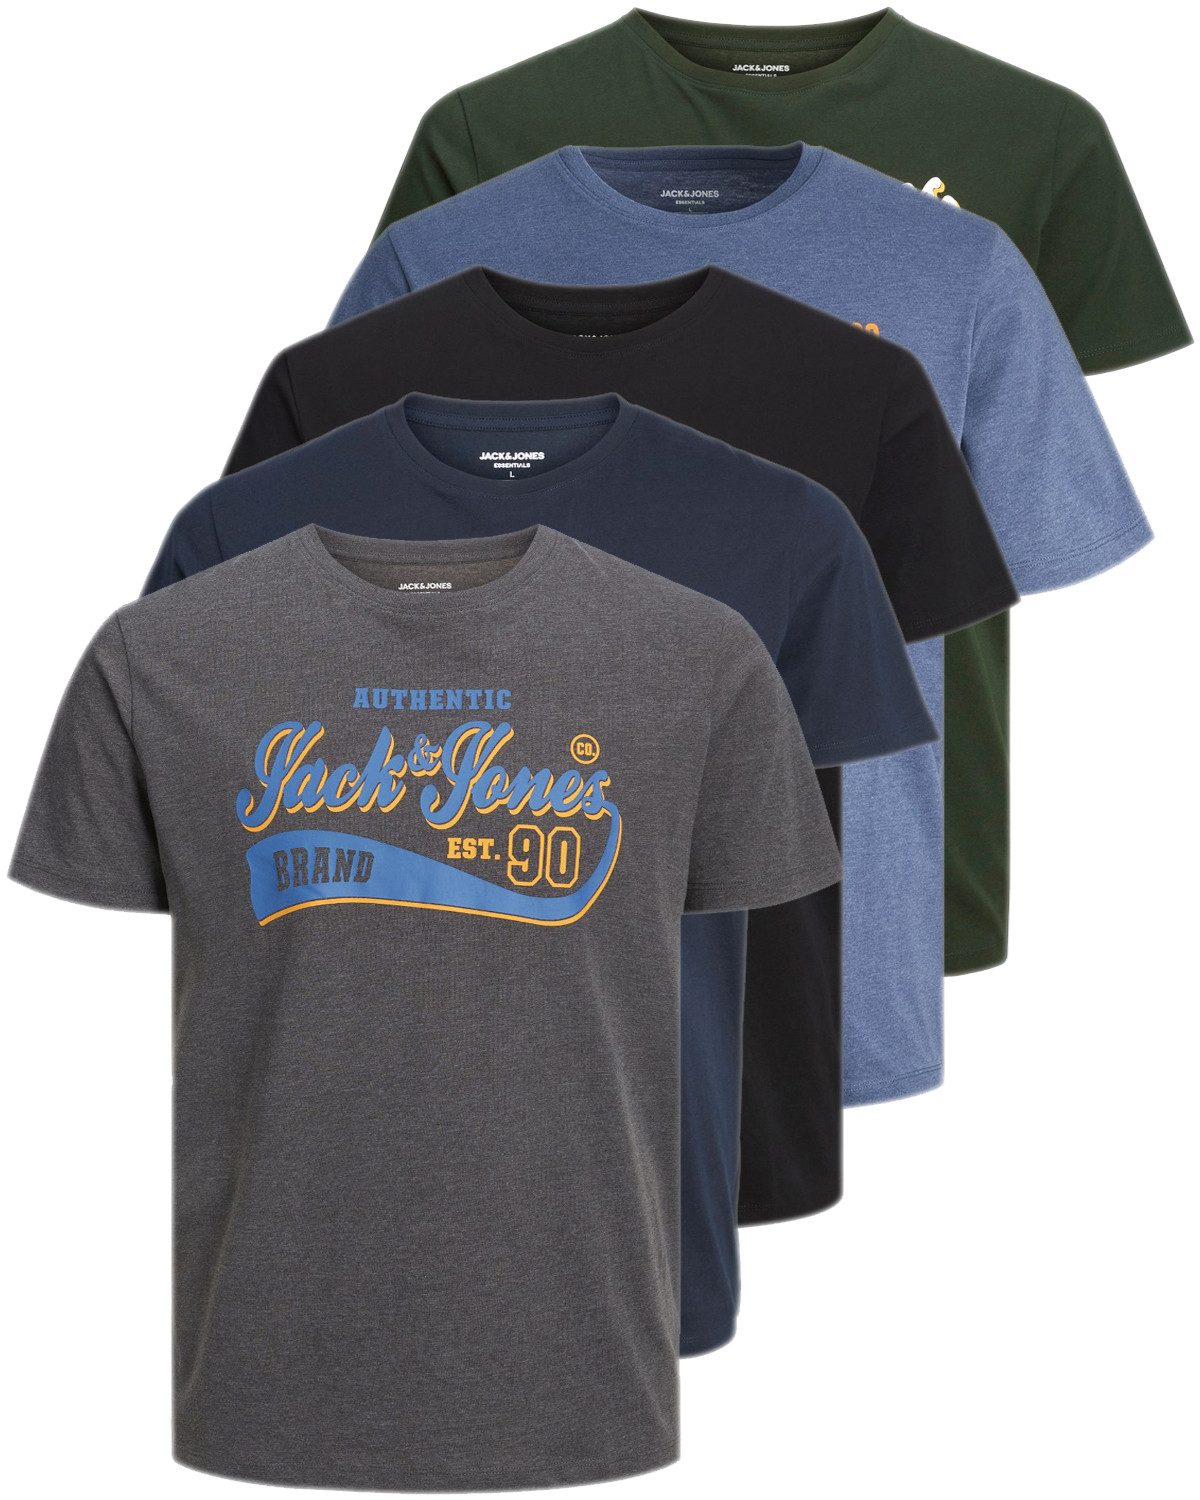 Jack & Jones Plus Print-Shirt Weites Shirt mit Printdruck (Spar-Set, 5er-Pack) unifarbenes Oberteil aus Baumwolle in Übergröße, Größe 5XL